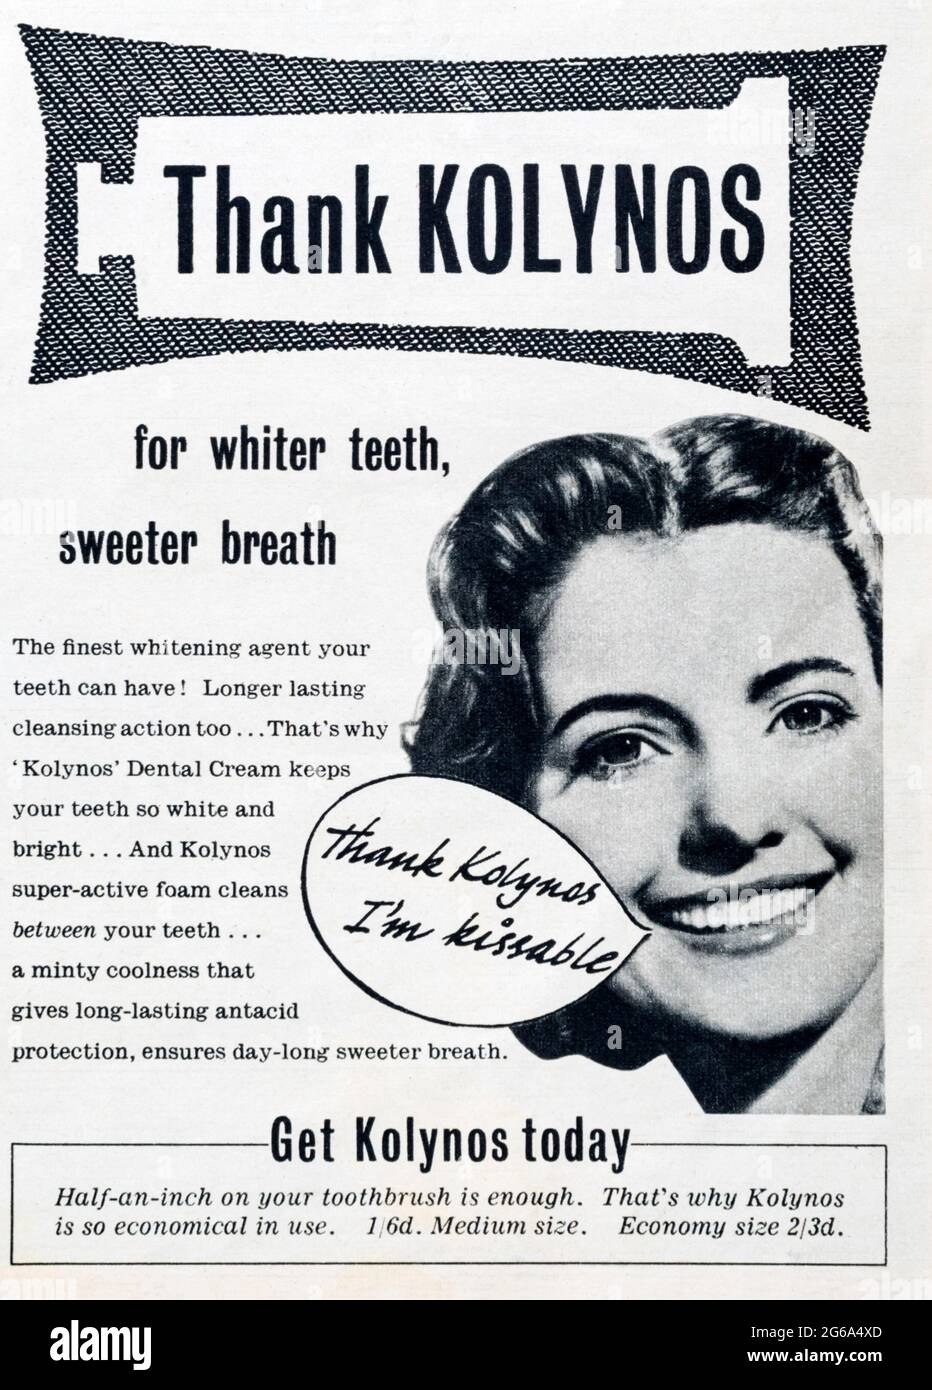 Eine Werbung in den 1950er Jahren für die Zahncreme von Kolynos  Stockfotografie - Alamy